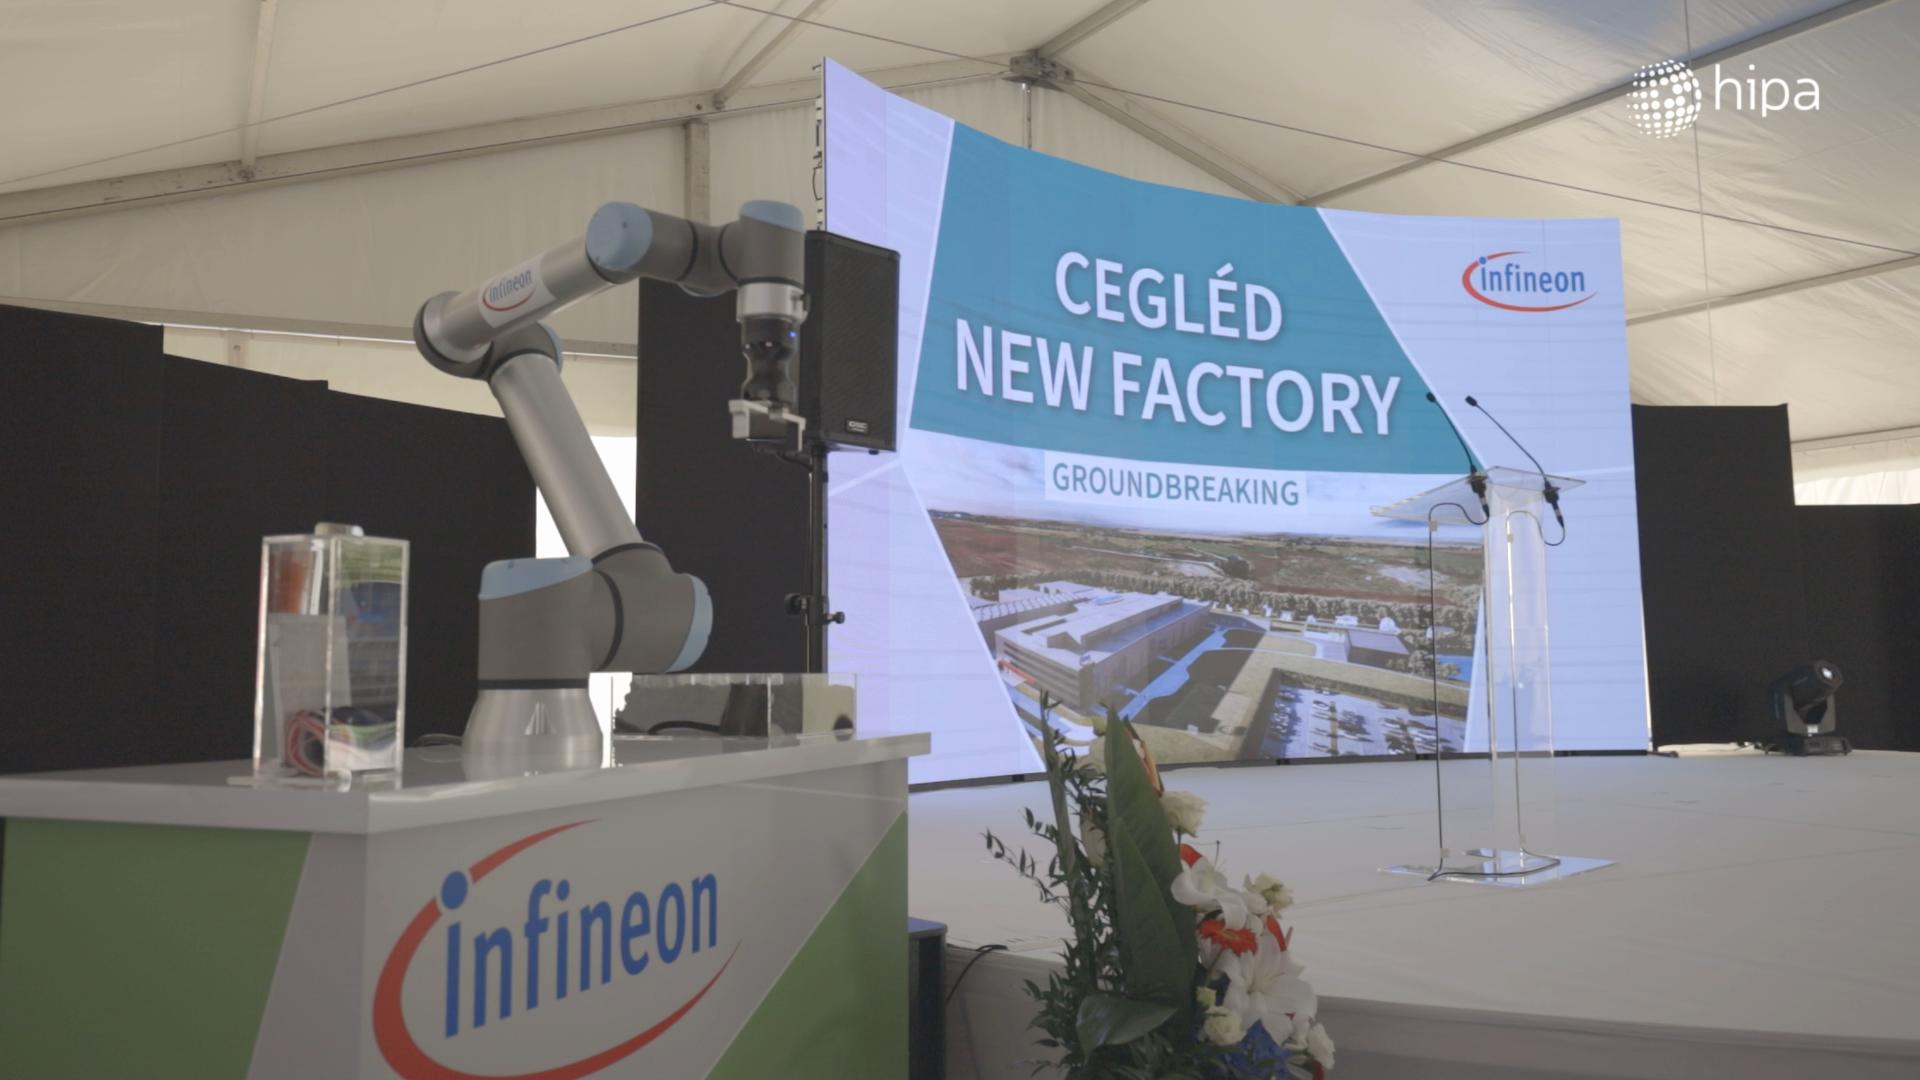 Letették az Infineon új egységének alapkövét Cegléden